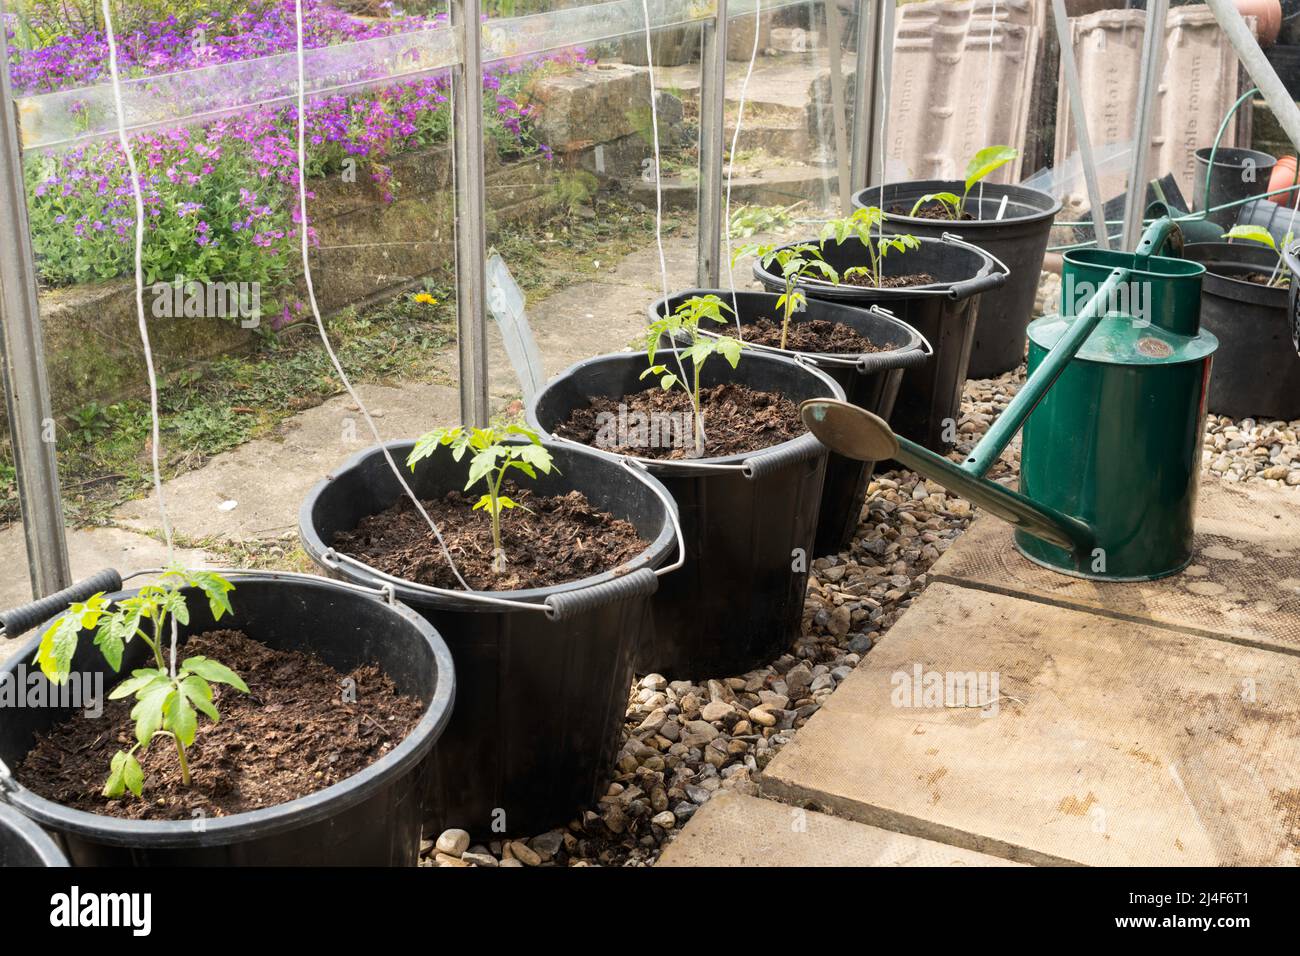 Junge Tomatenpflanzen, Variety Gardener's Delight, in großen Töpfen oder Eimern in einem Gewächshaus gepflanzt, England, Großbritannien Stockfoto